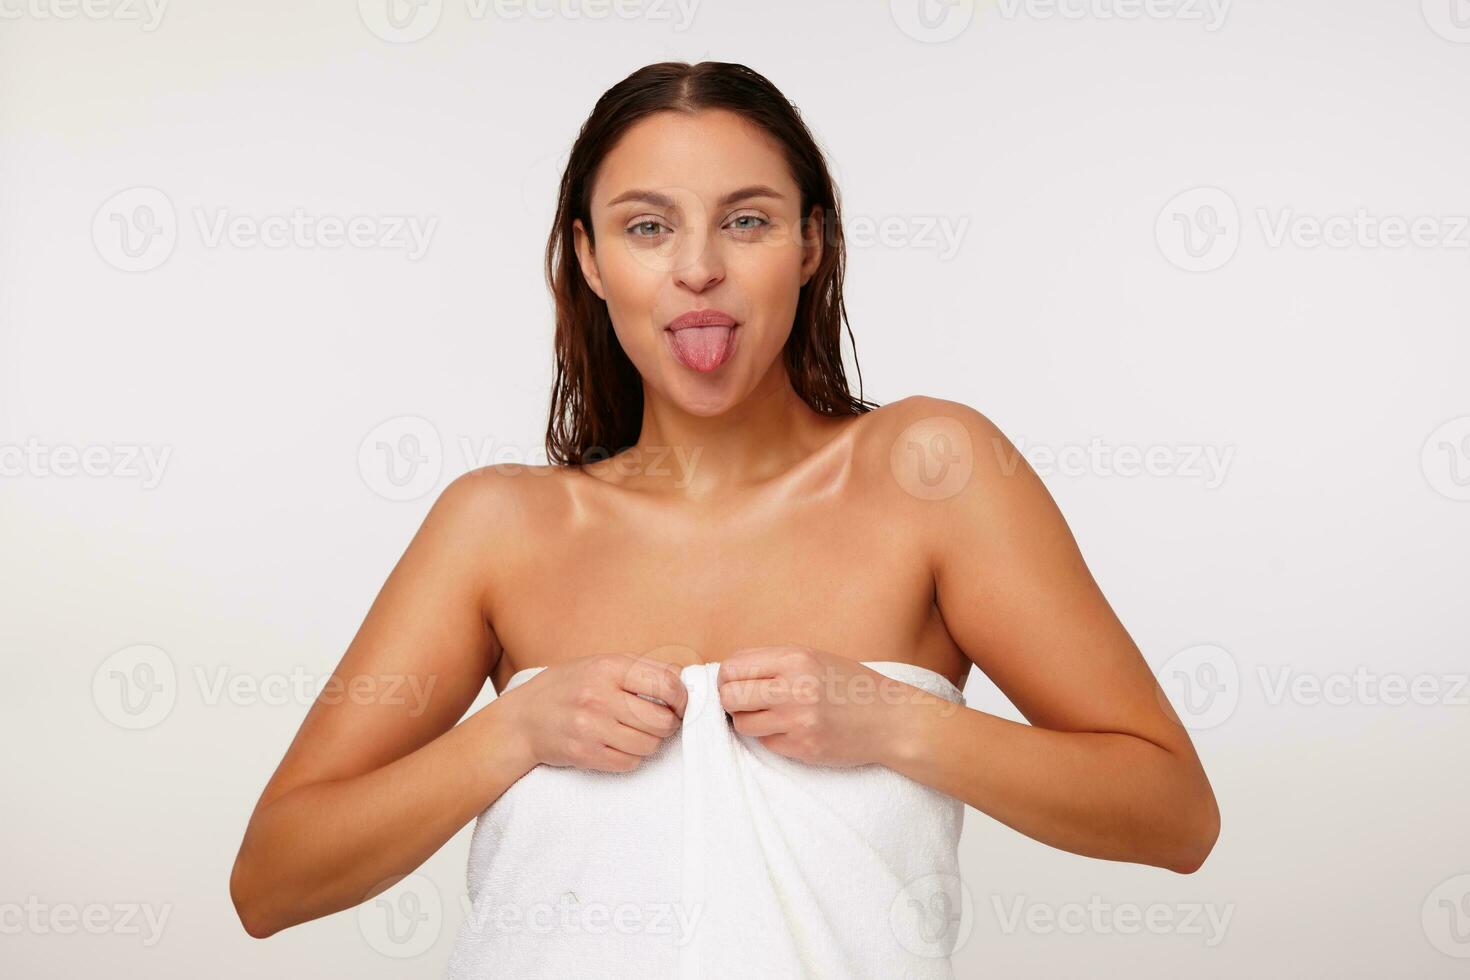 inomhus- Foto av ung skön glad mörk håriga kvinna som visar tunga medan ser positivt på kamera, stående över vit bakgrund i bad handduk